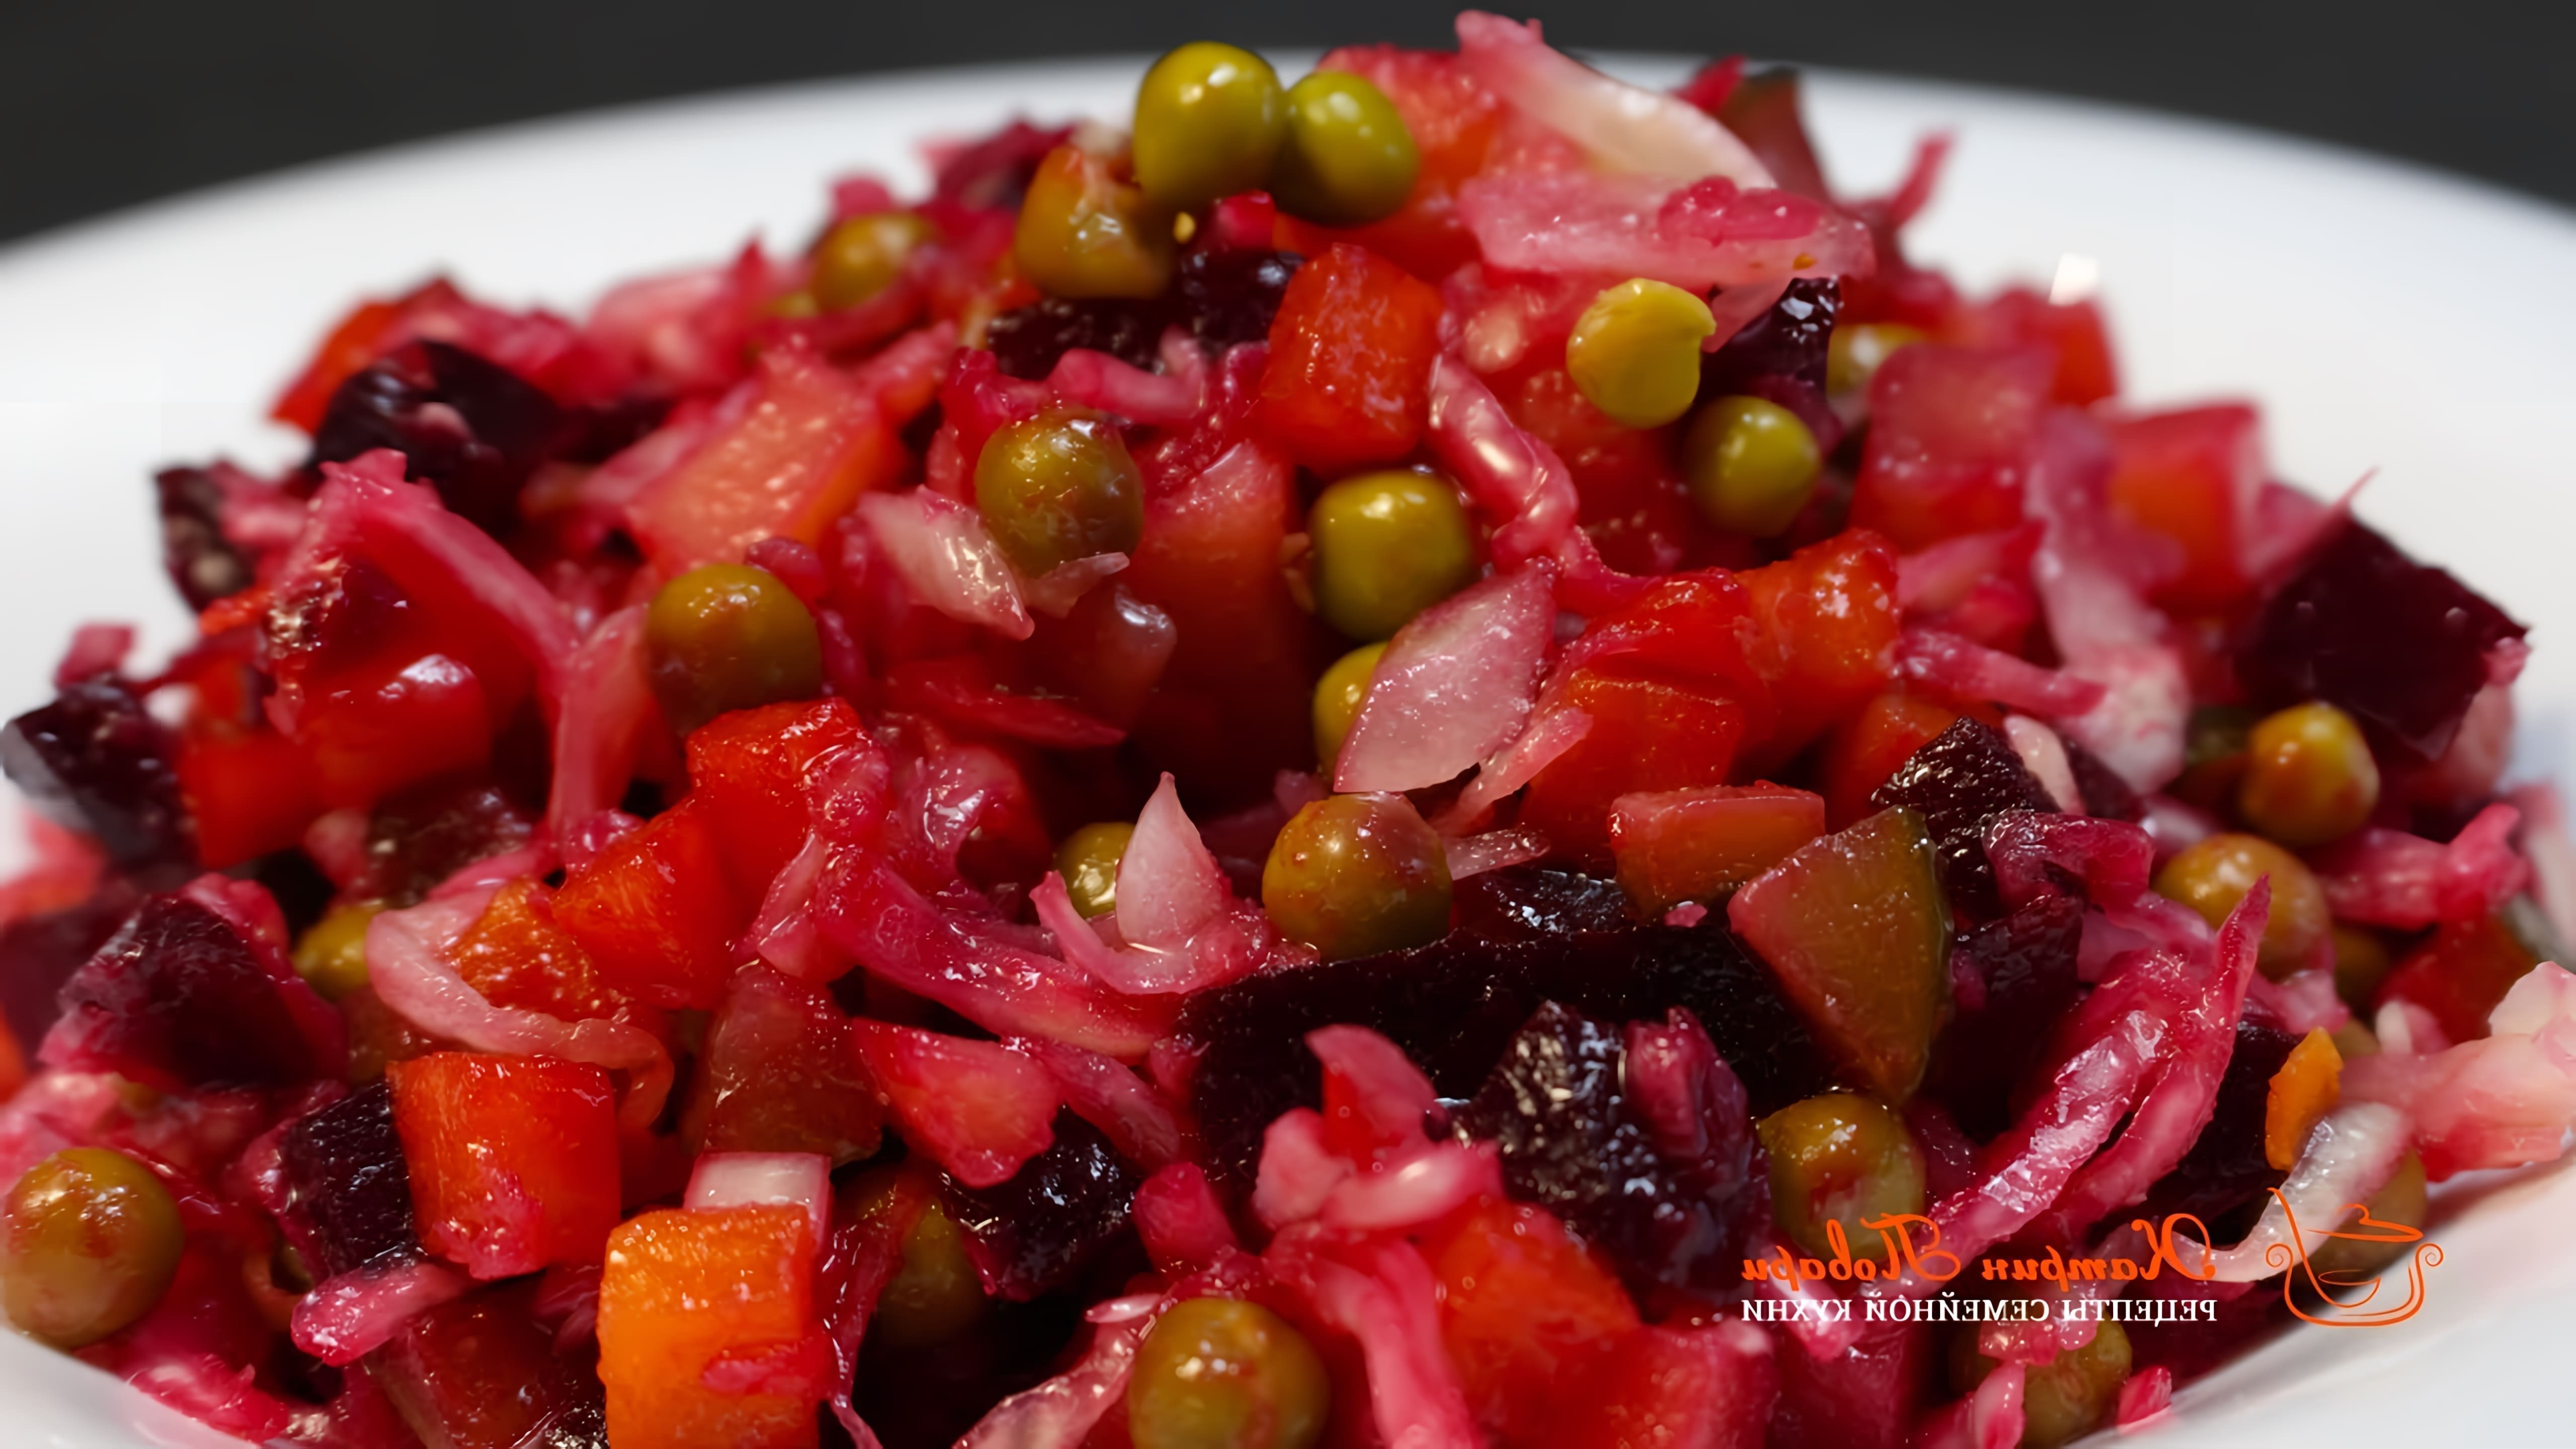 В данном видео демонстрируется процесс приготовления классического салата винегрет с квашеной капустой